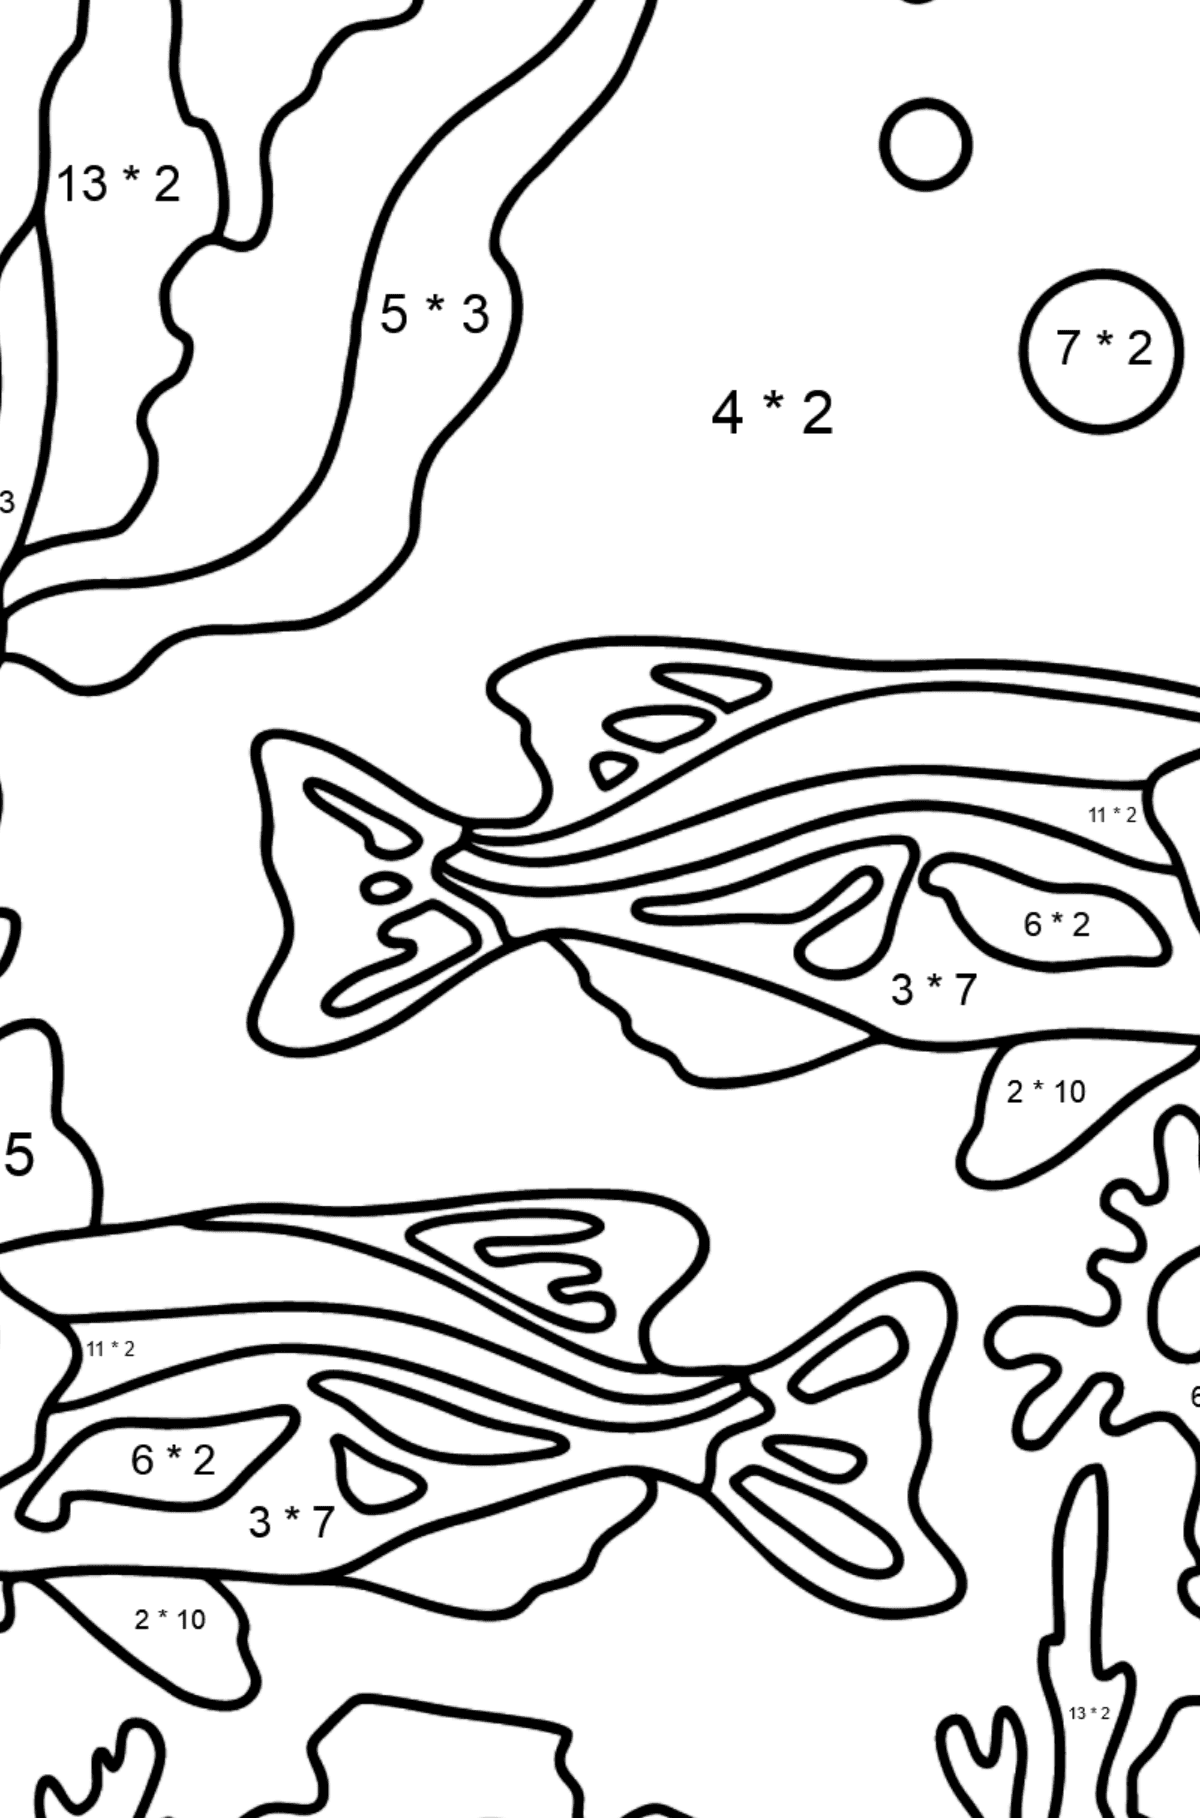 Dibujo para Colorear - Los Peces están Nadando Juntos Pacíficamente - Colorear con Matemáticas - Multiplicaciones para Niños